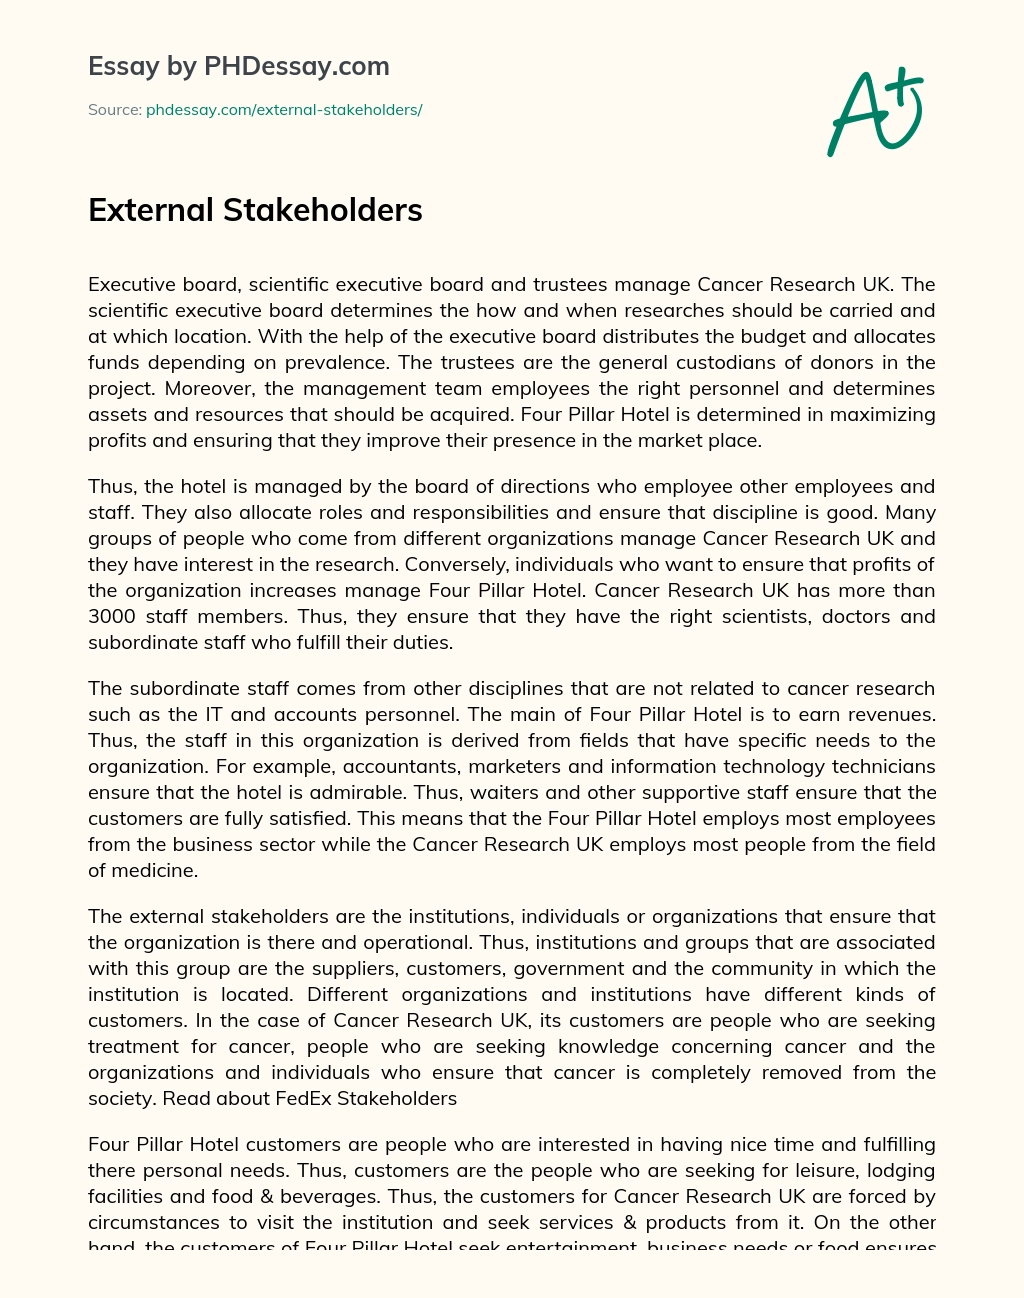 External Stakeholders essay